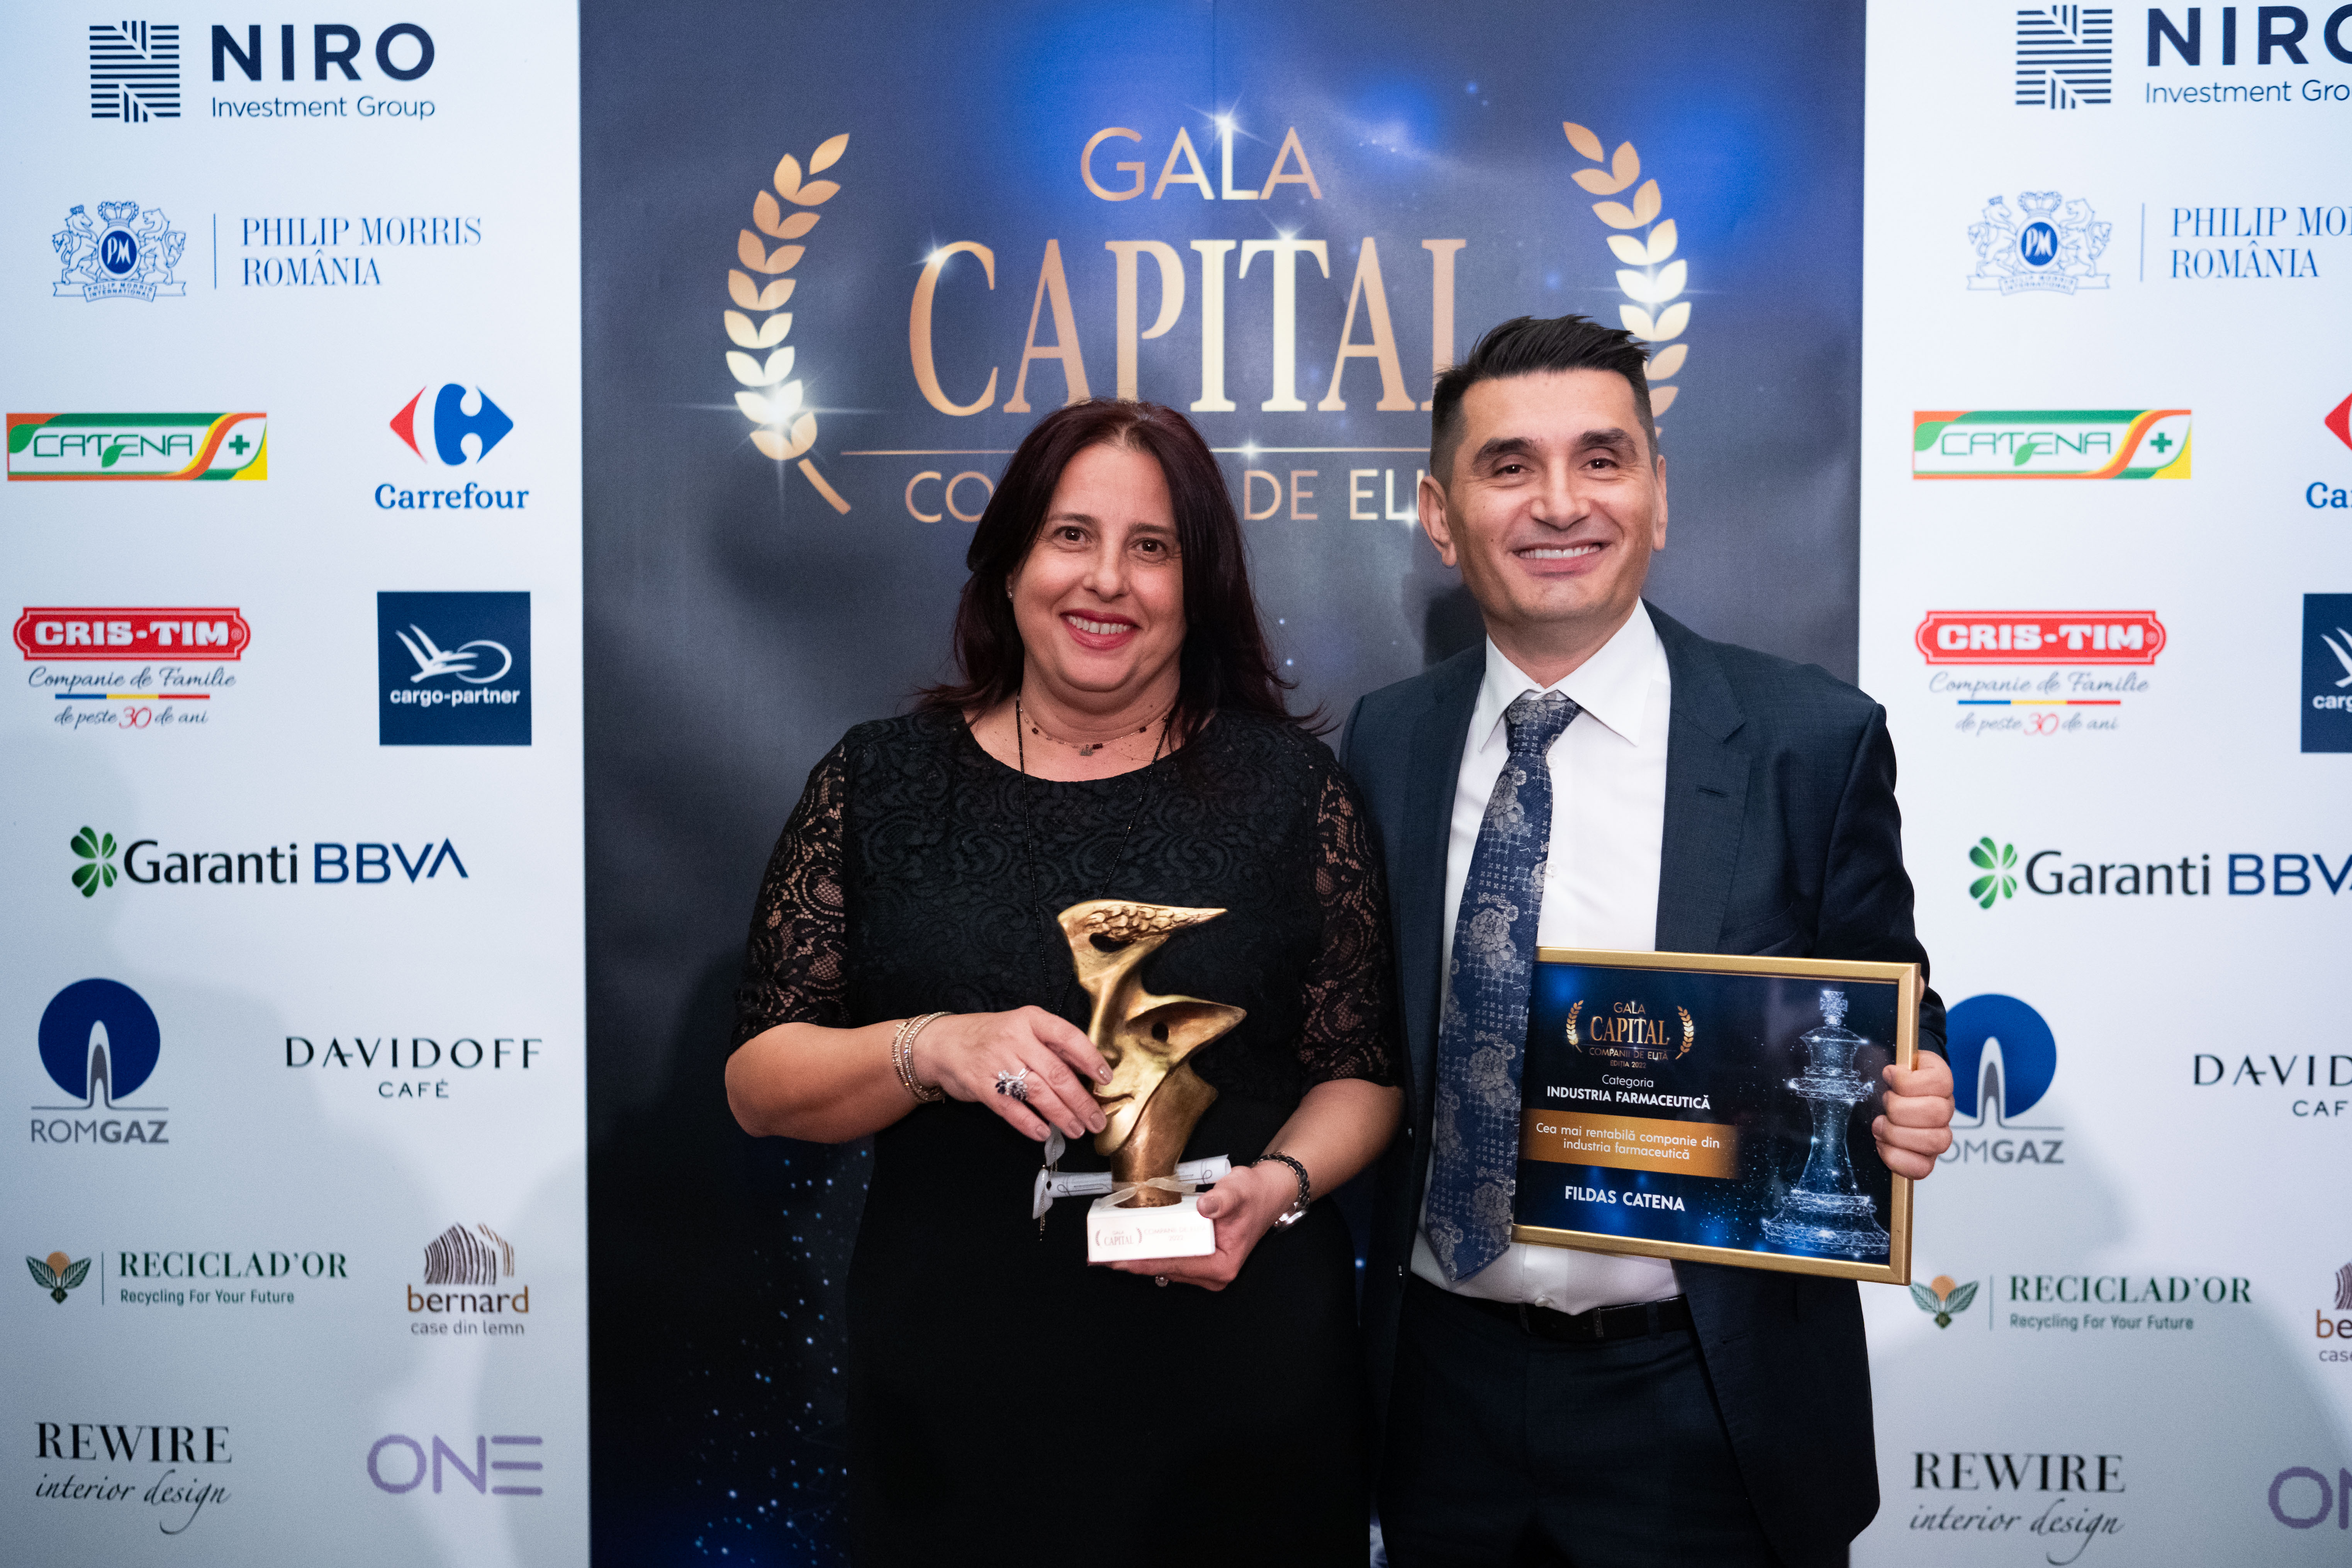 Fildas-Catena, premiata la Gala Capital Companii de Elita